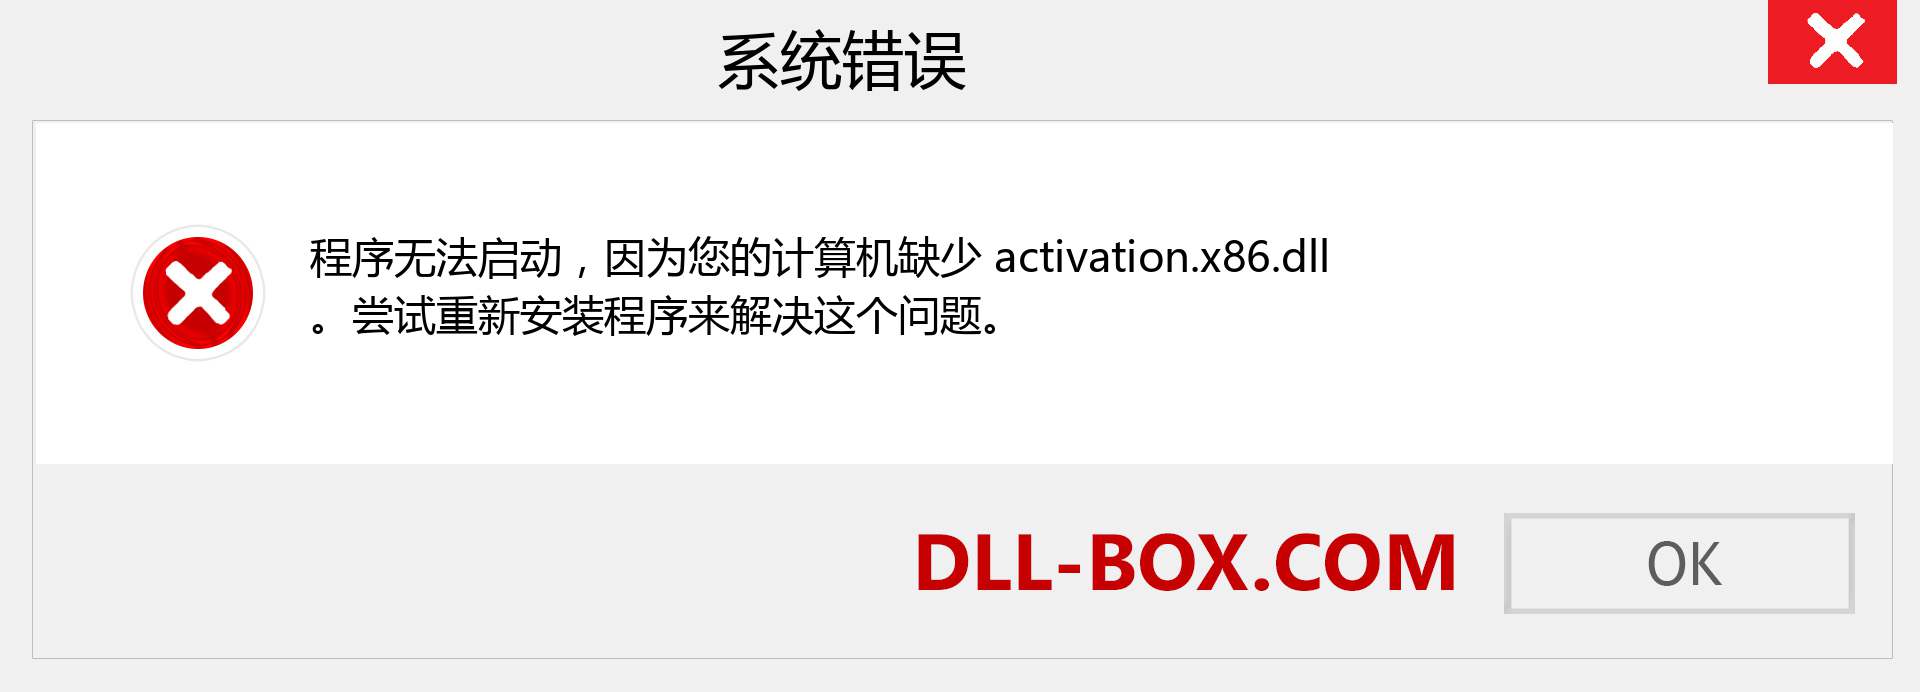 activation.x86.dll 文件丢失？。 适用于 Windows 7、8、10 的下载 - 修复 Windows、照片、图像上的 activation.x86 dll 丢失错误